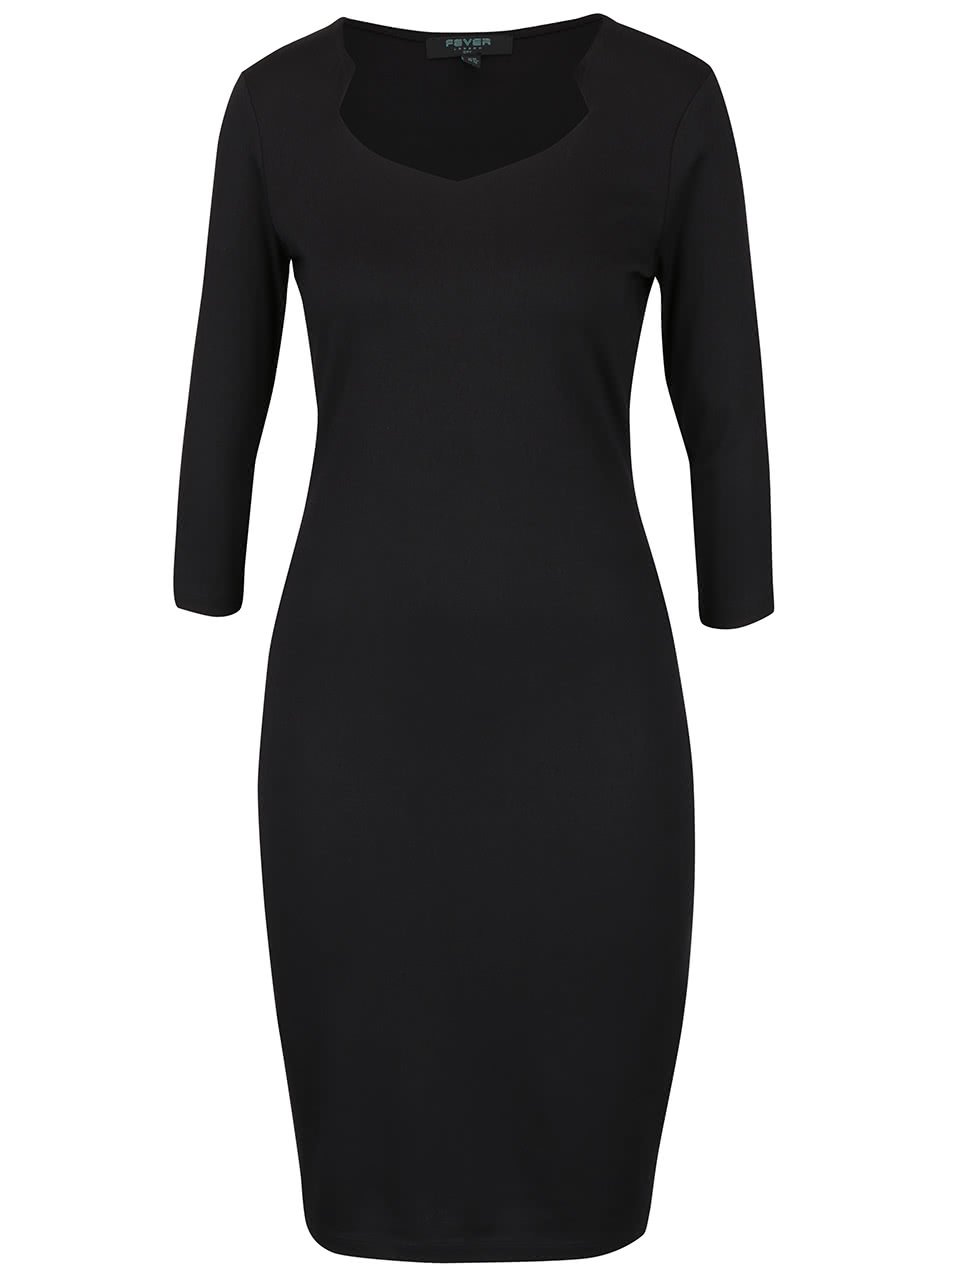 Černé přiléhavé šaty s 3/4 rukávy Fever London Gretta